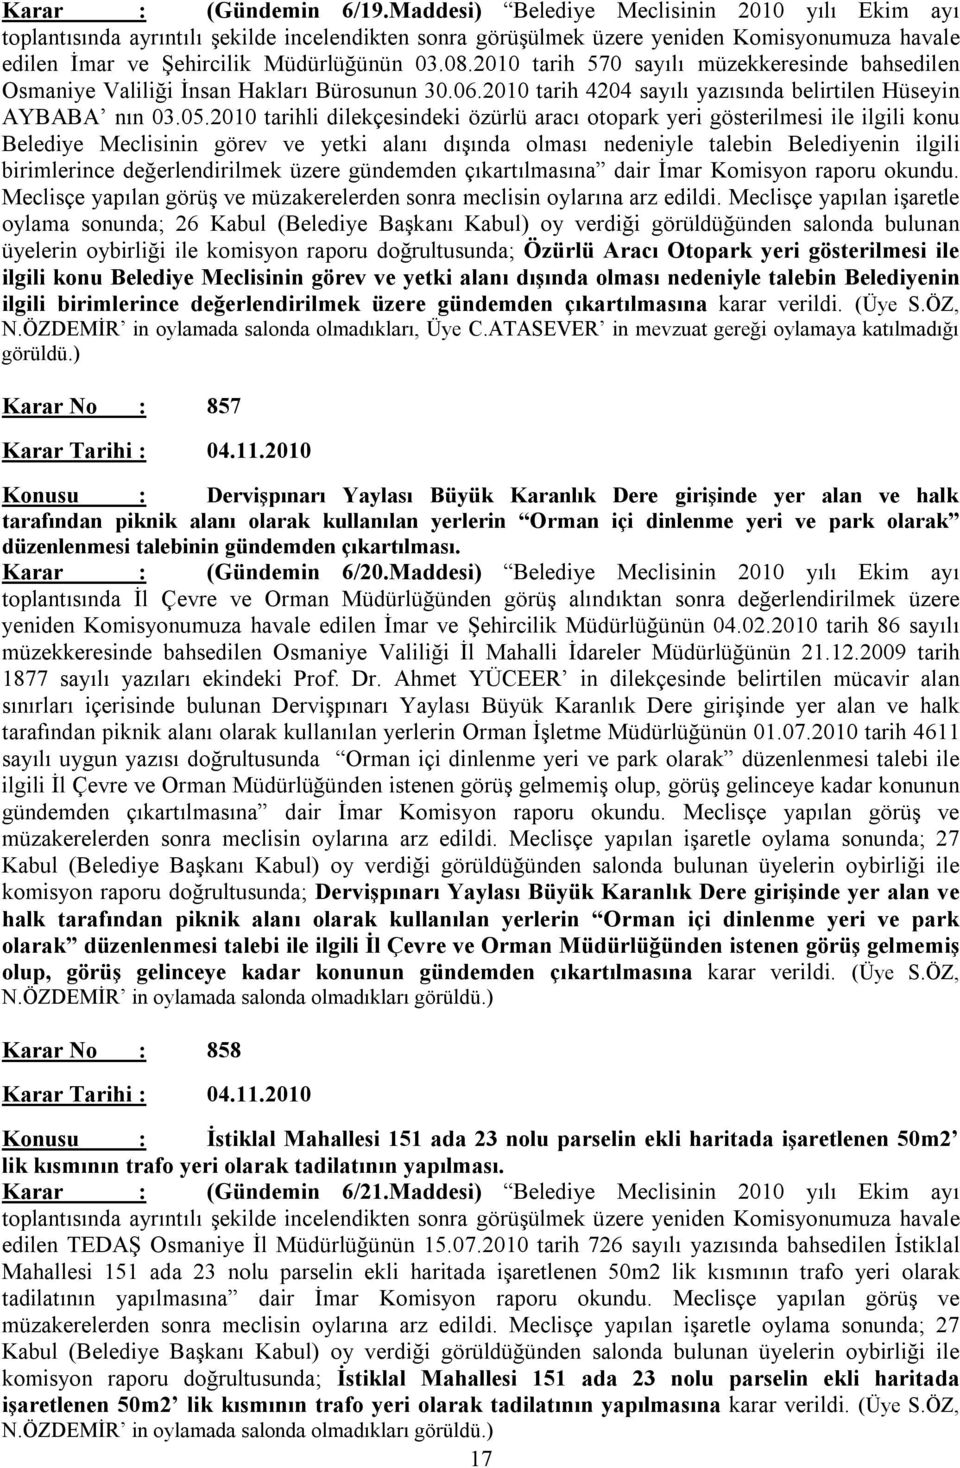 2010 tarih 570 sayılı müzekkeresinde bahsedilen Osmaniye Valiliği İnsan Hakları Bürosunun 30.06.2010 tarih 4204 sayılı yazısında belirtilen Hüseyin AYBABA nın 03.05.